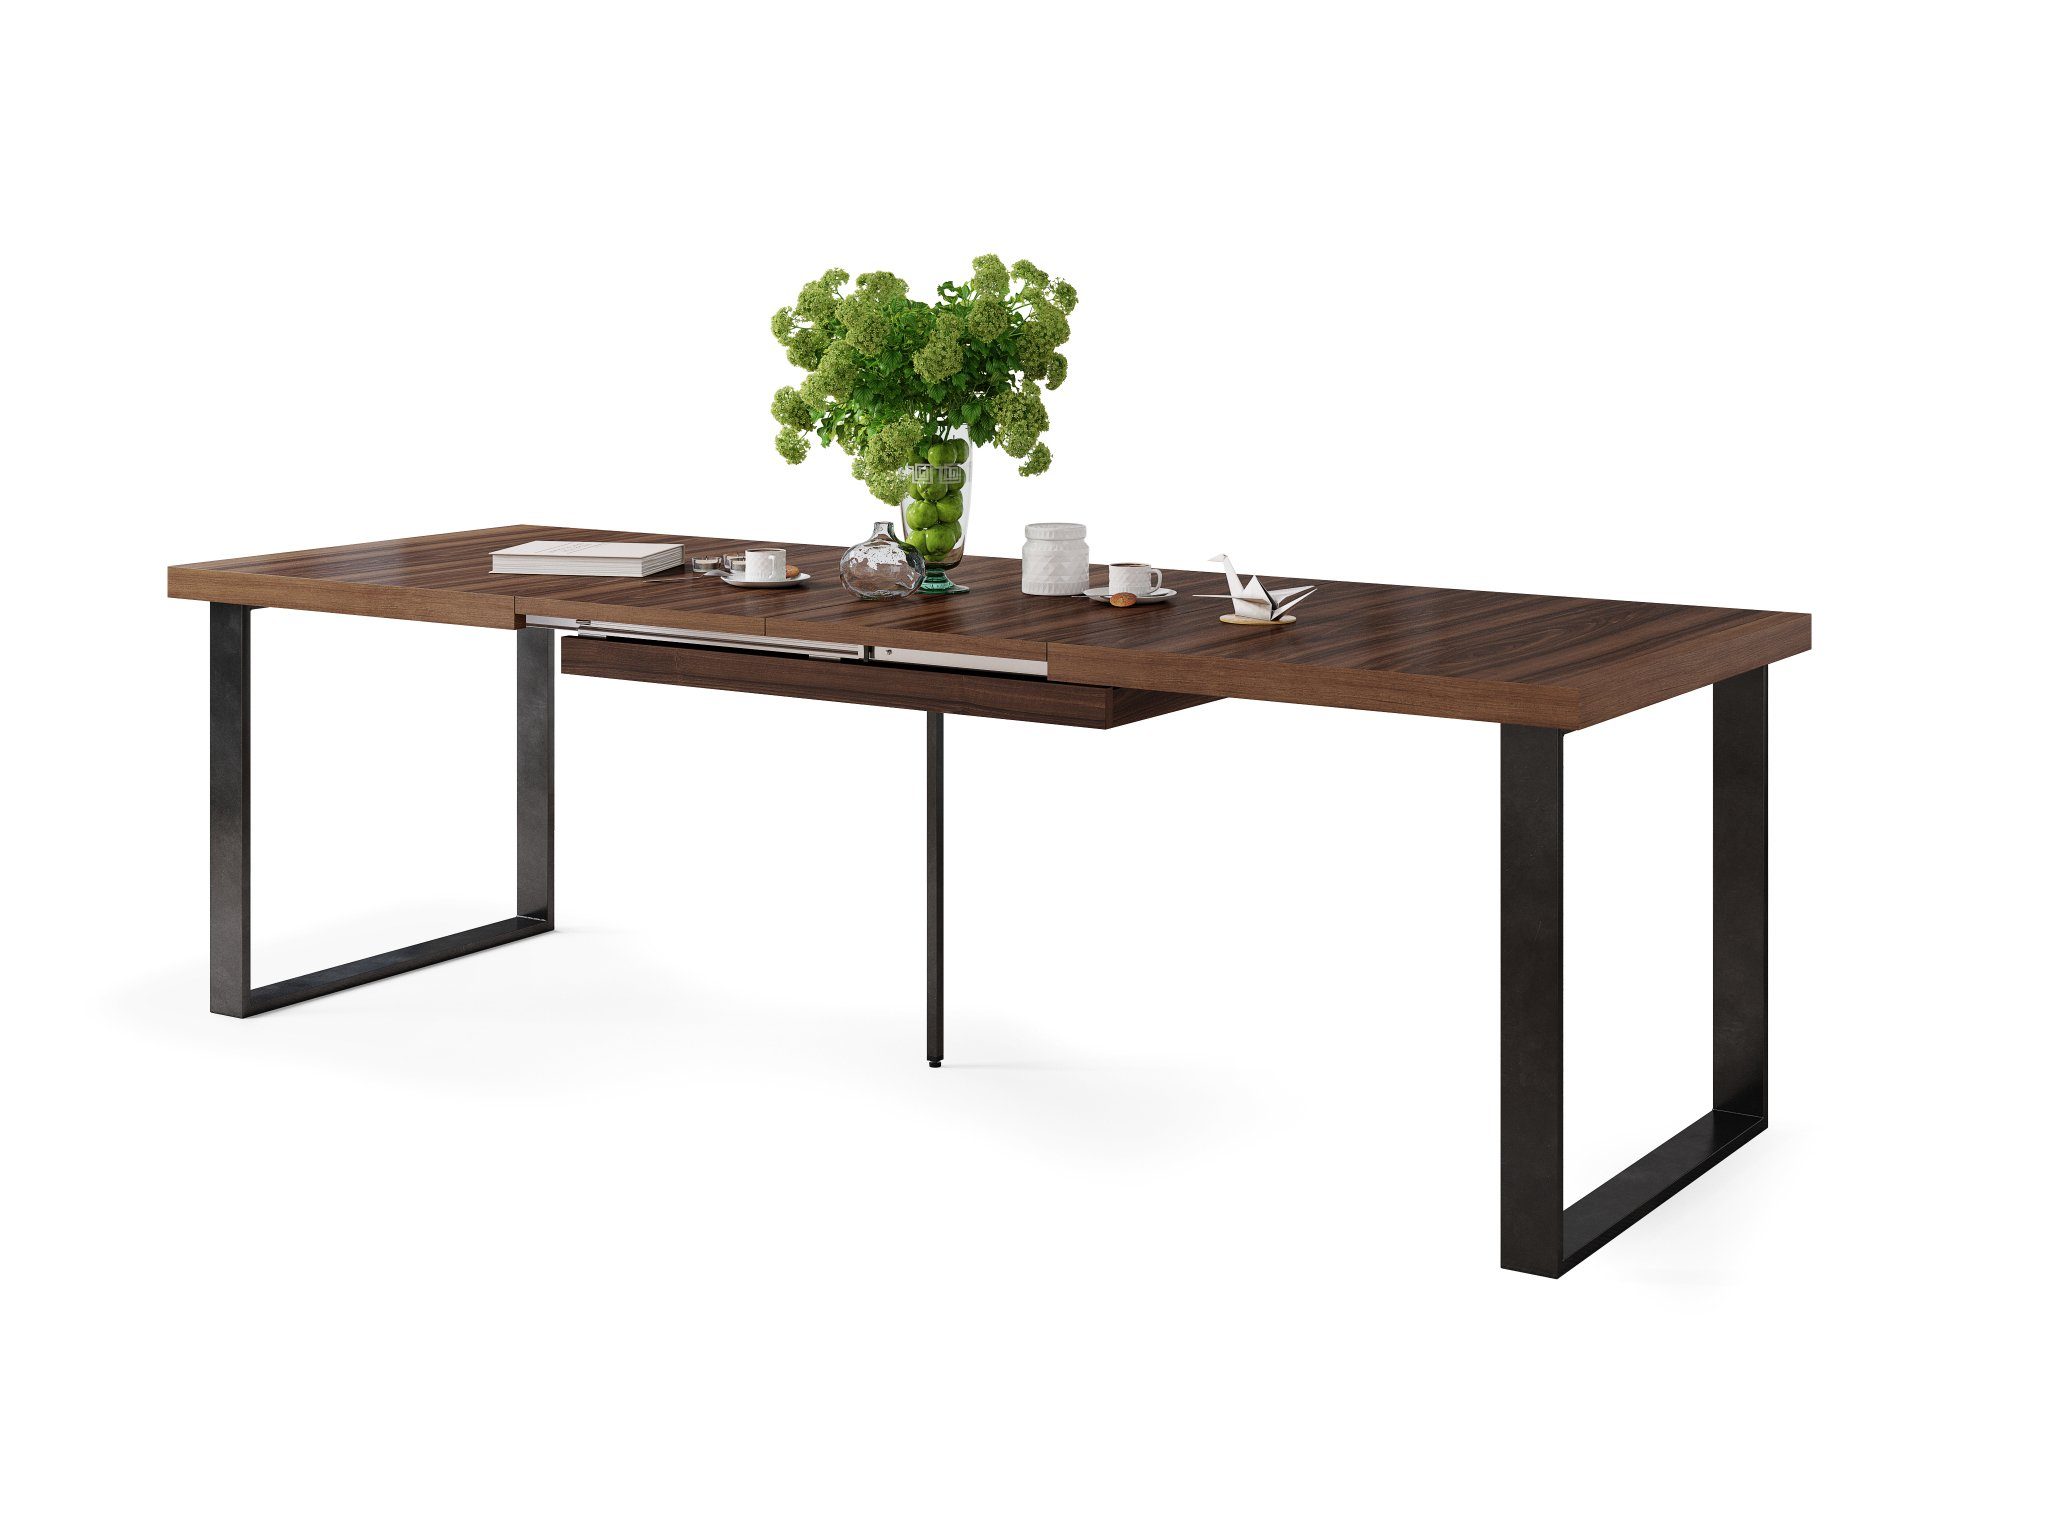 Mazzoni Esstisch Design Esstisch Avella bis Nussbaum cm 160 Tisch matt ausziehbar - 310 Schwarz